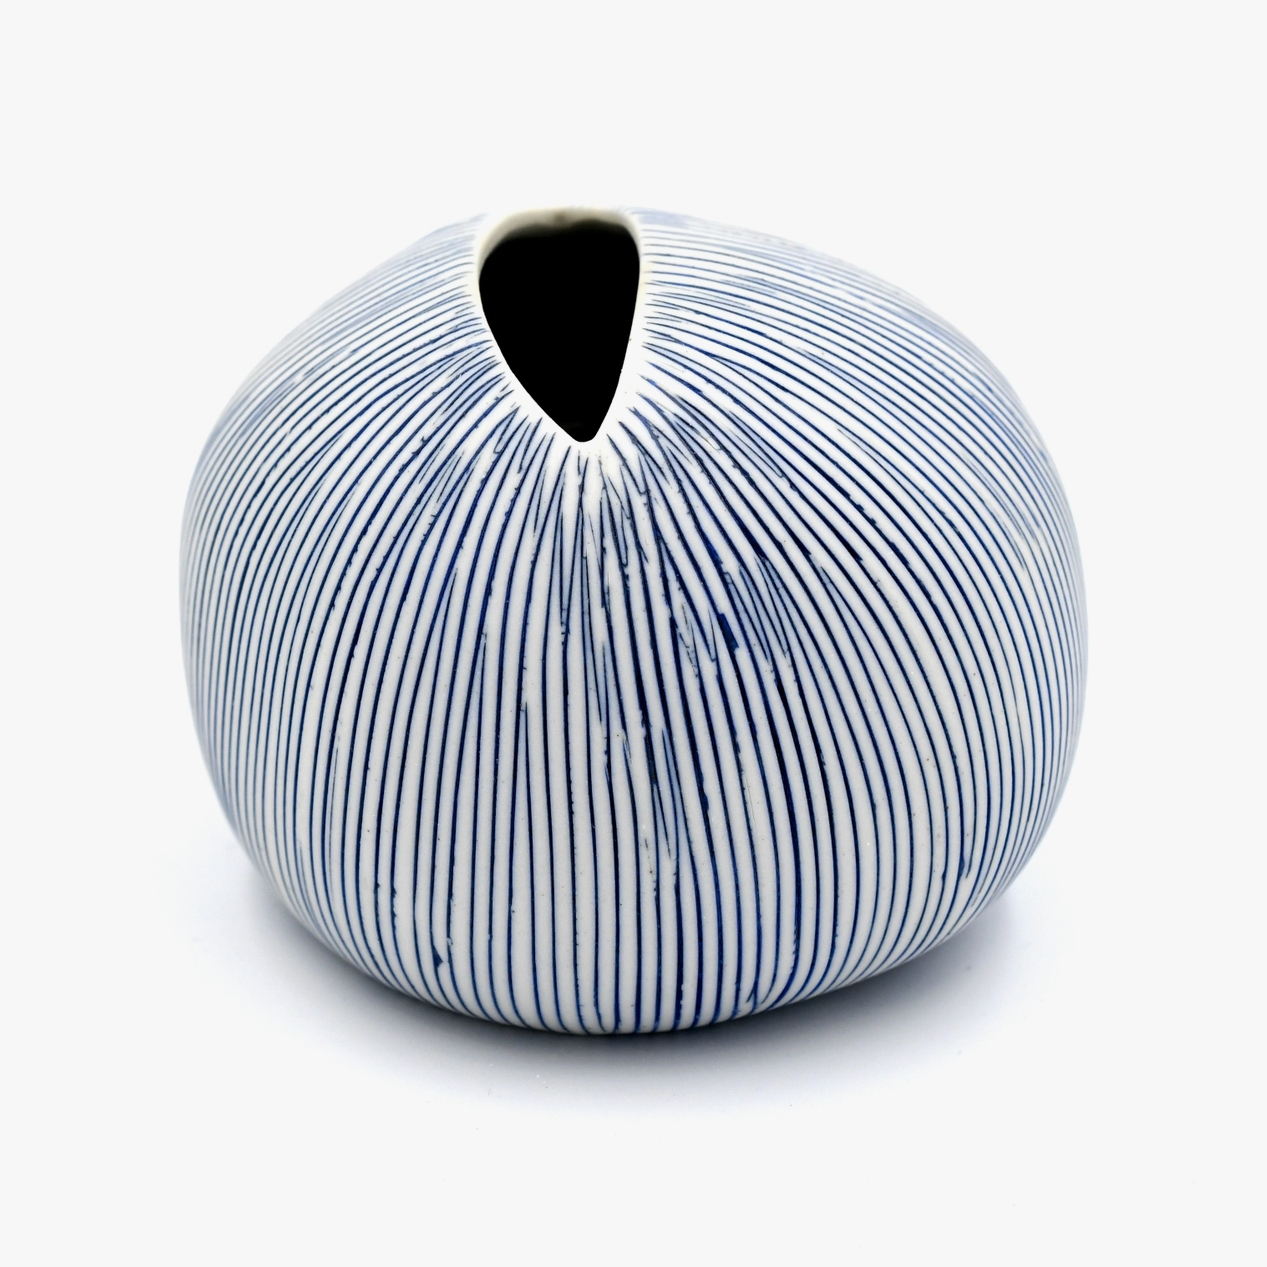 Handmade Pebble Vase, Blue Lines